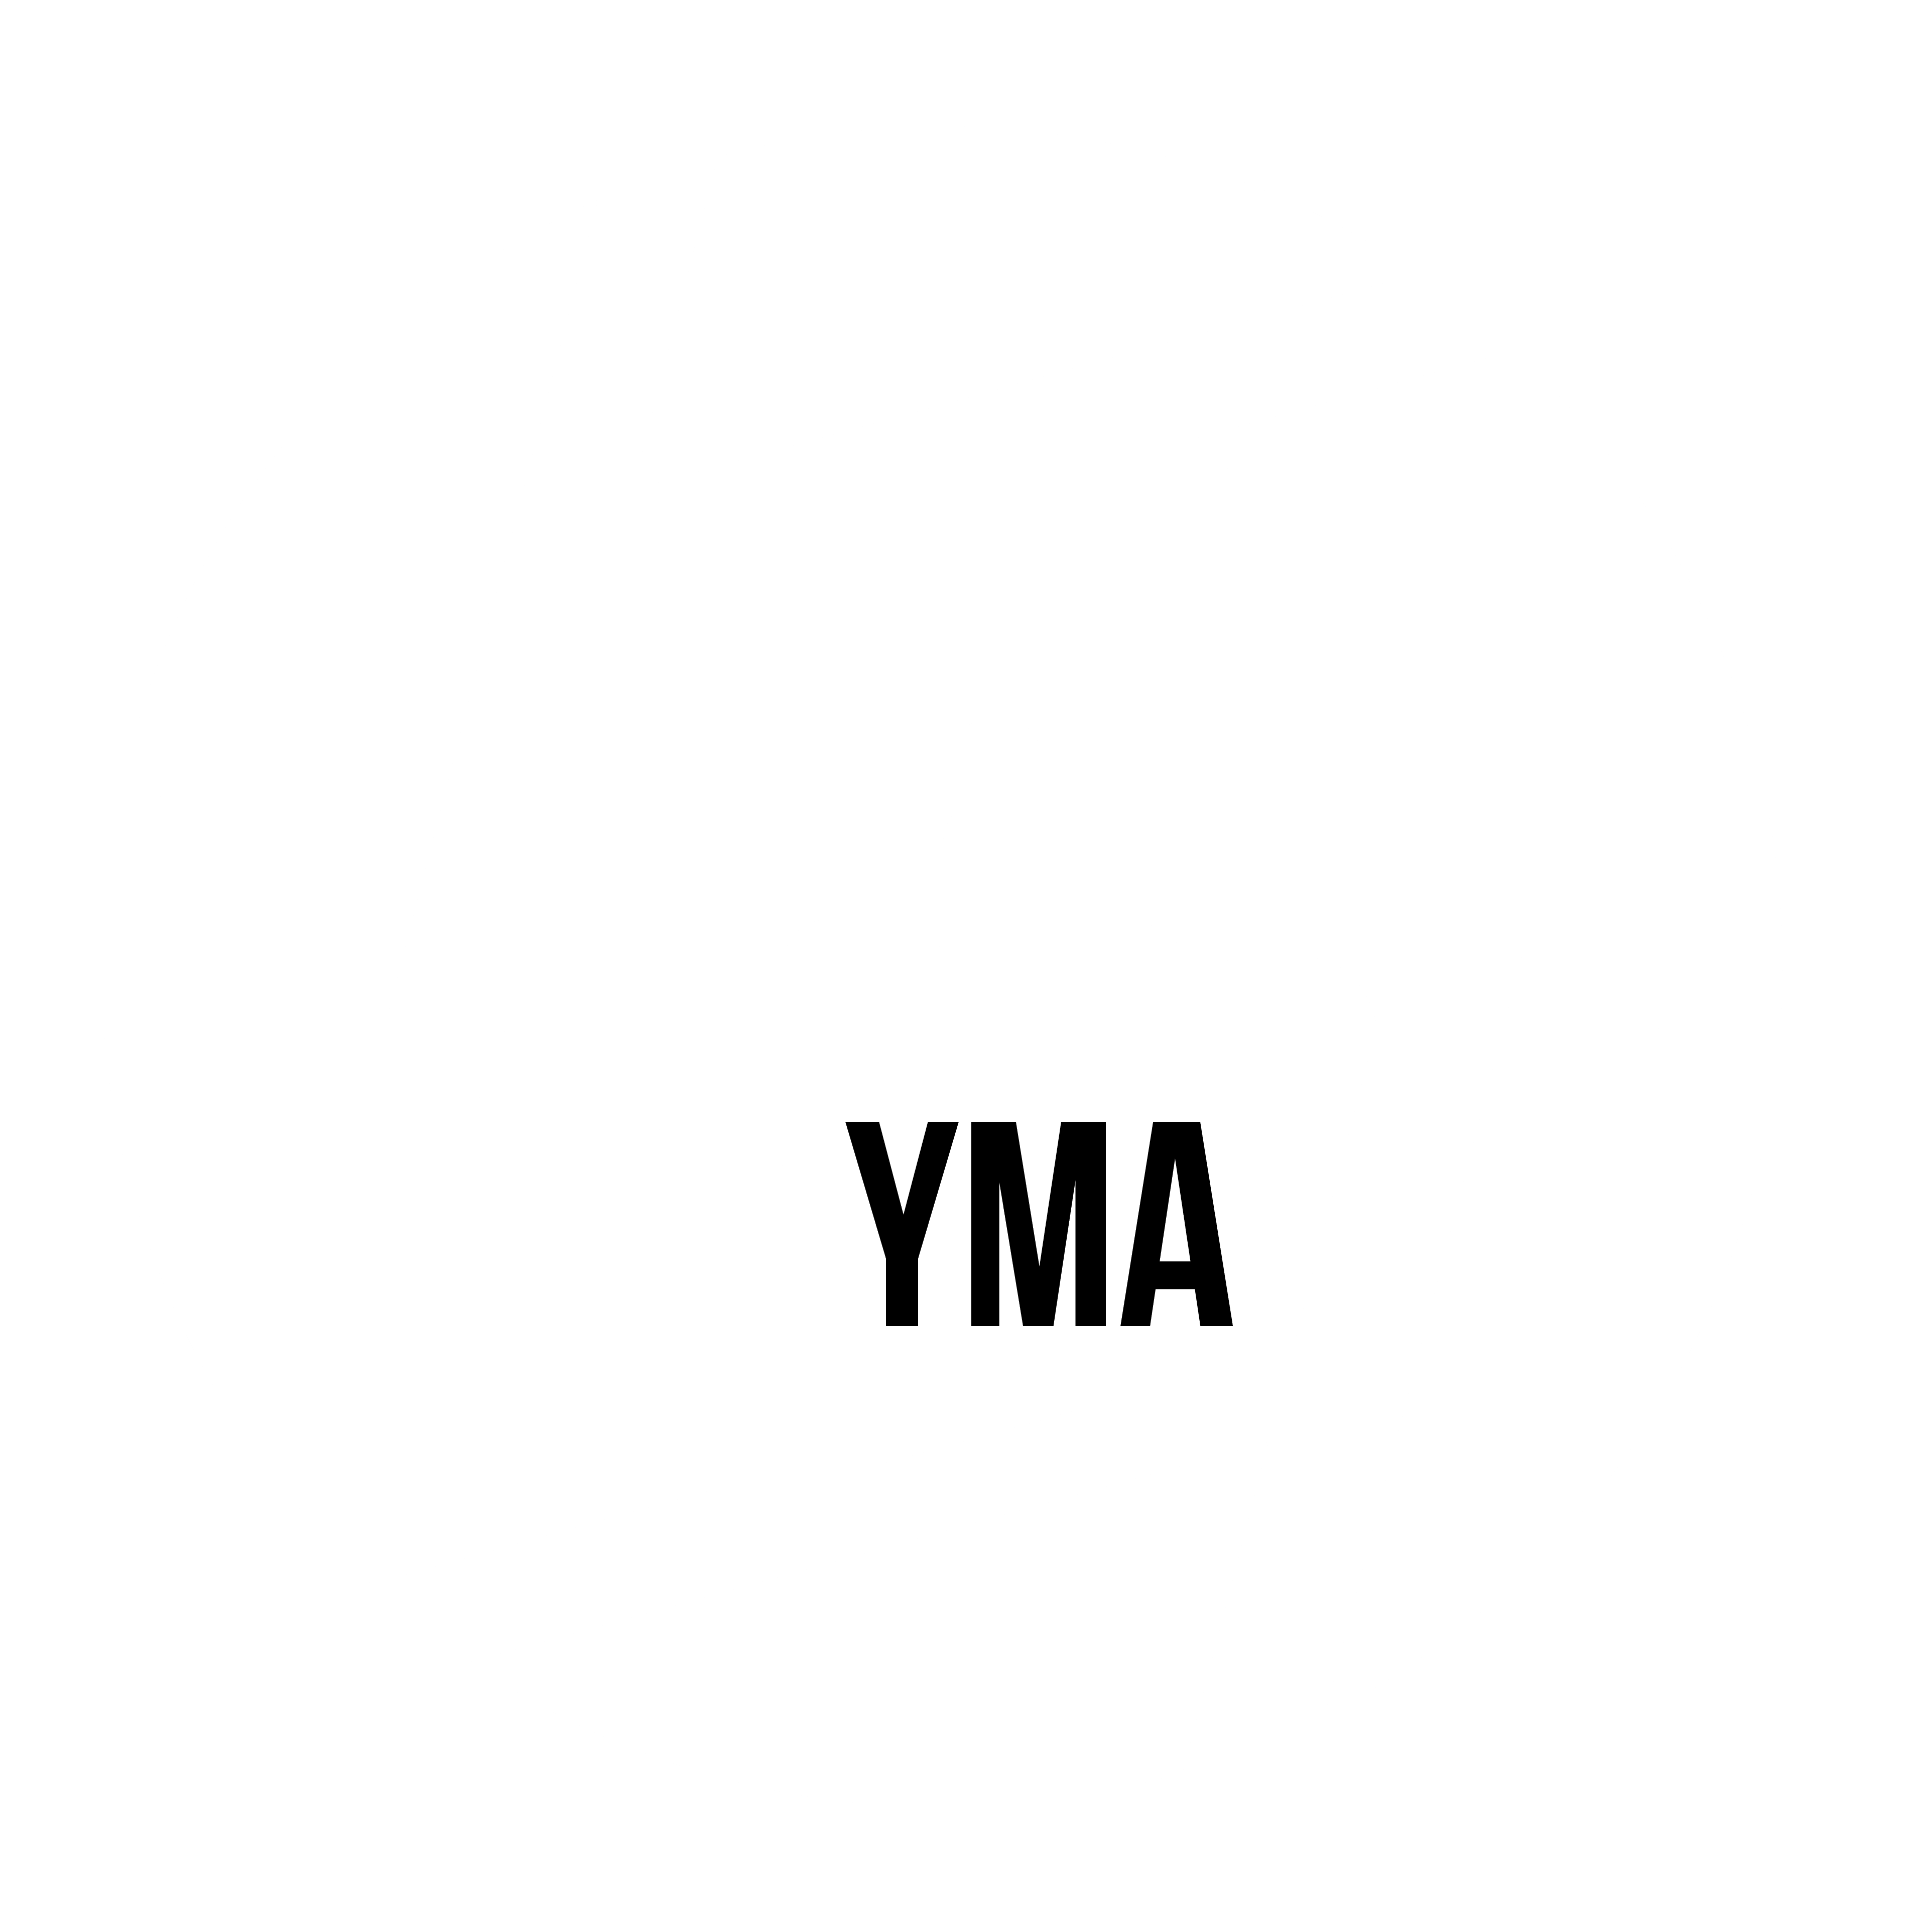 Youth Media Arts Logo